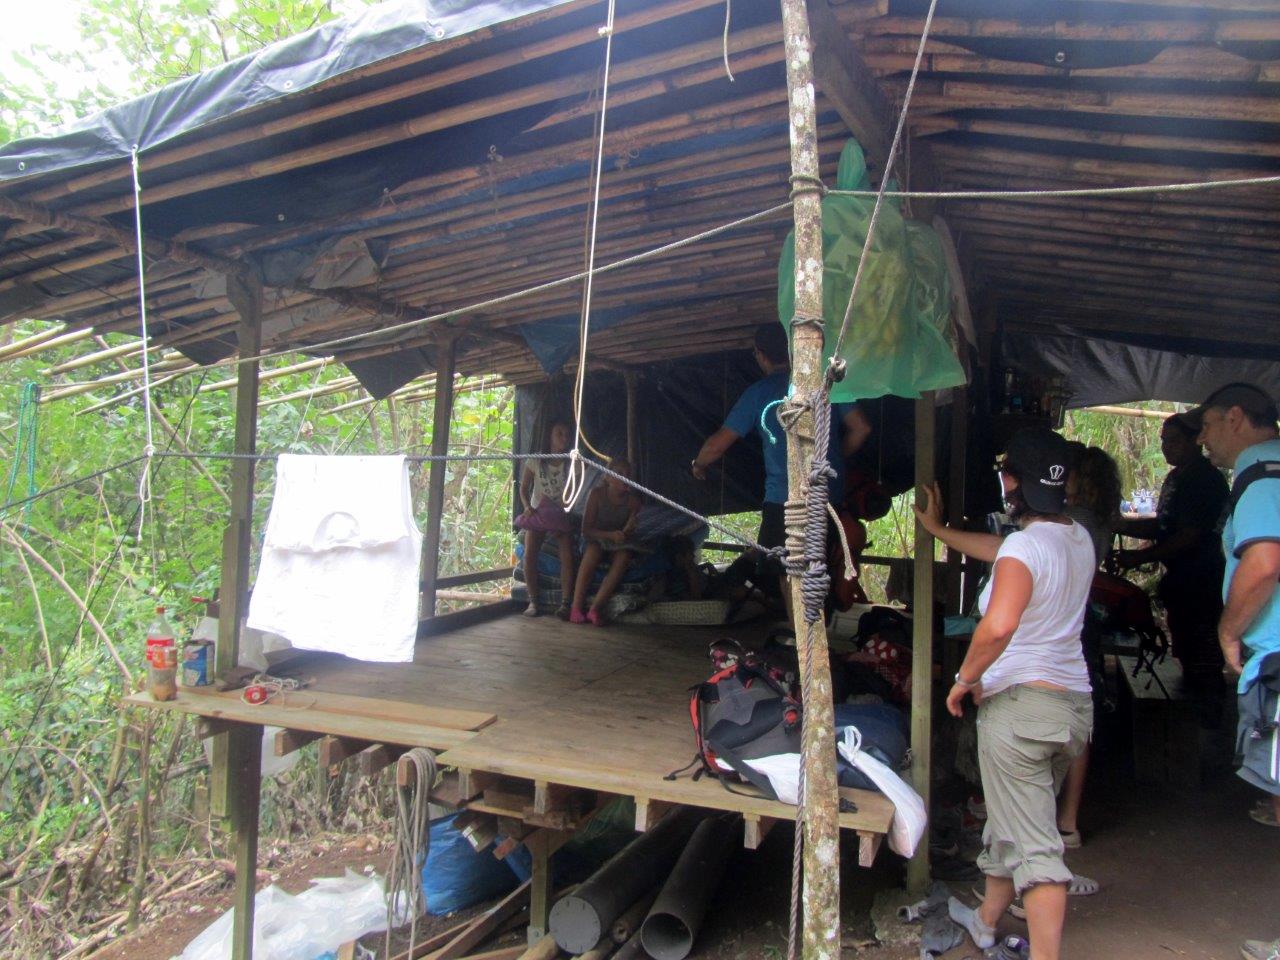 Bivouacs dans des cabanes de chasseurs aménagés sur le Tamanu. Le refuge public (avec douches et sanitaires) d'une bonne centaine de places est spartiate mais convivial.